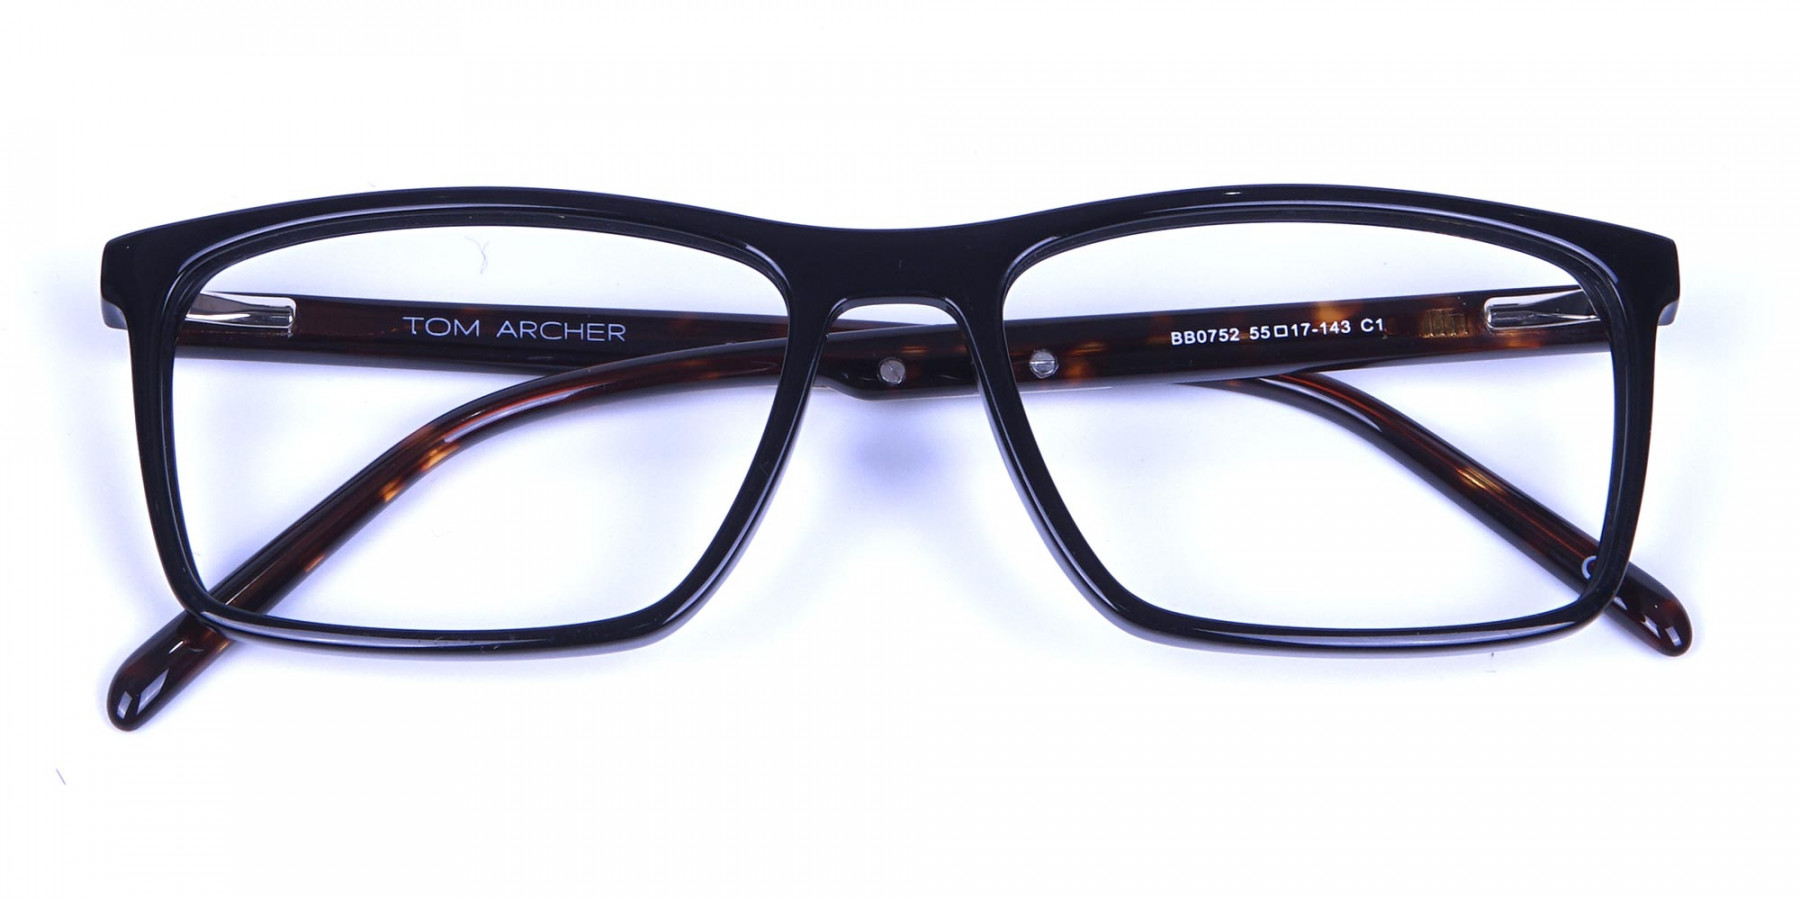 Black & Tortoiseshell Glasses